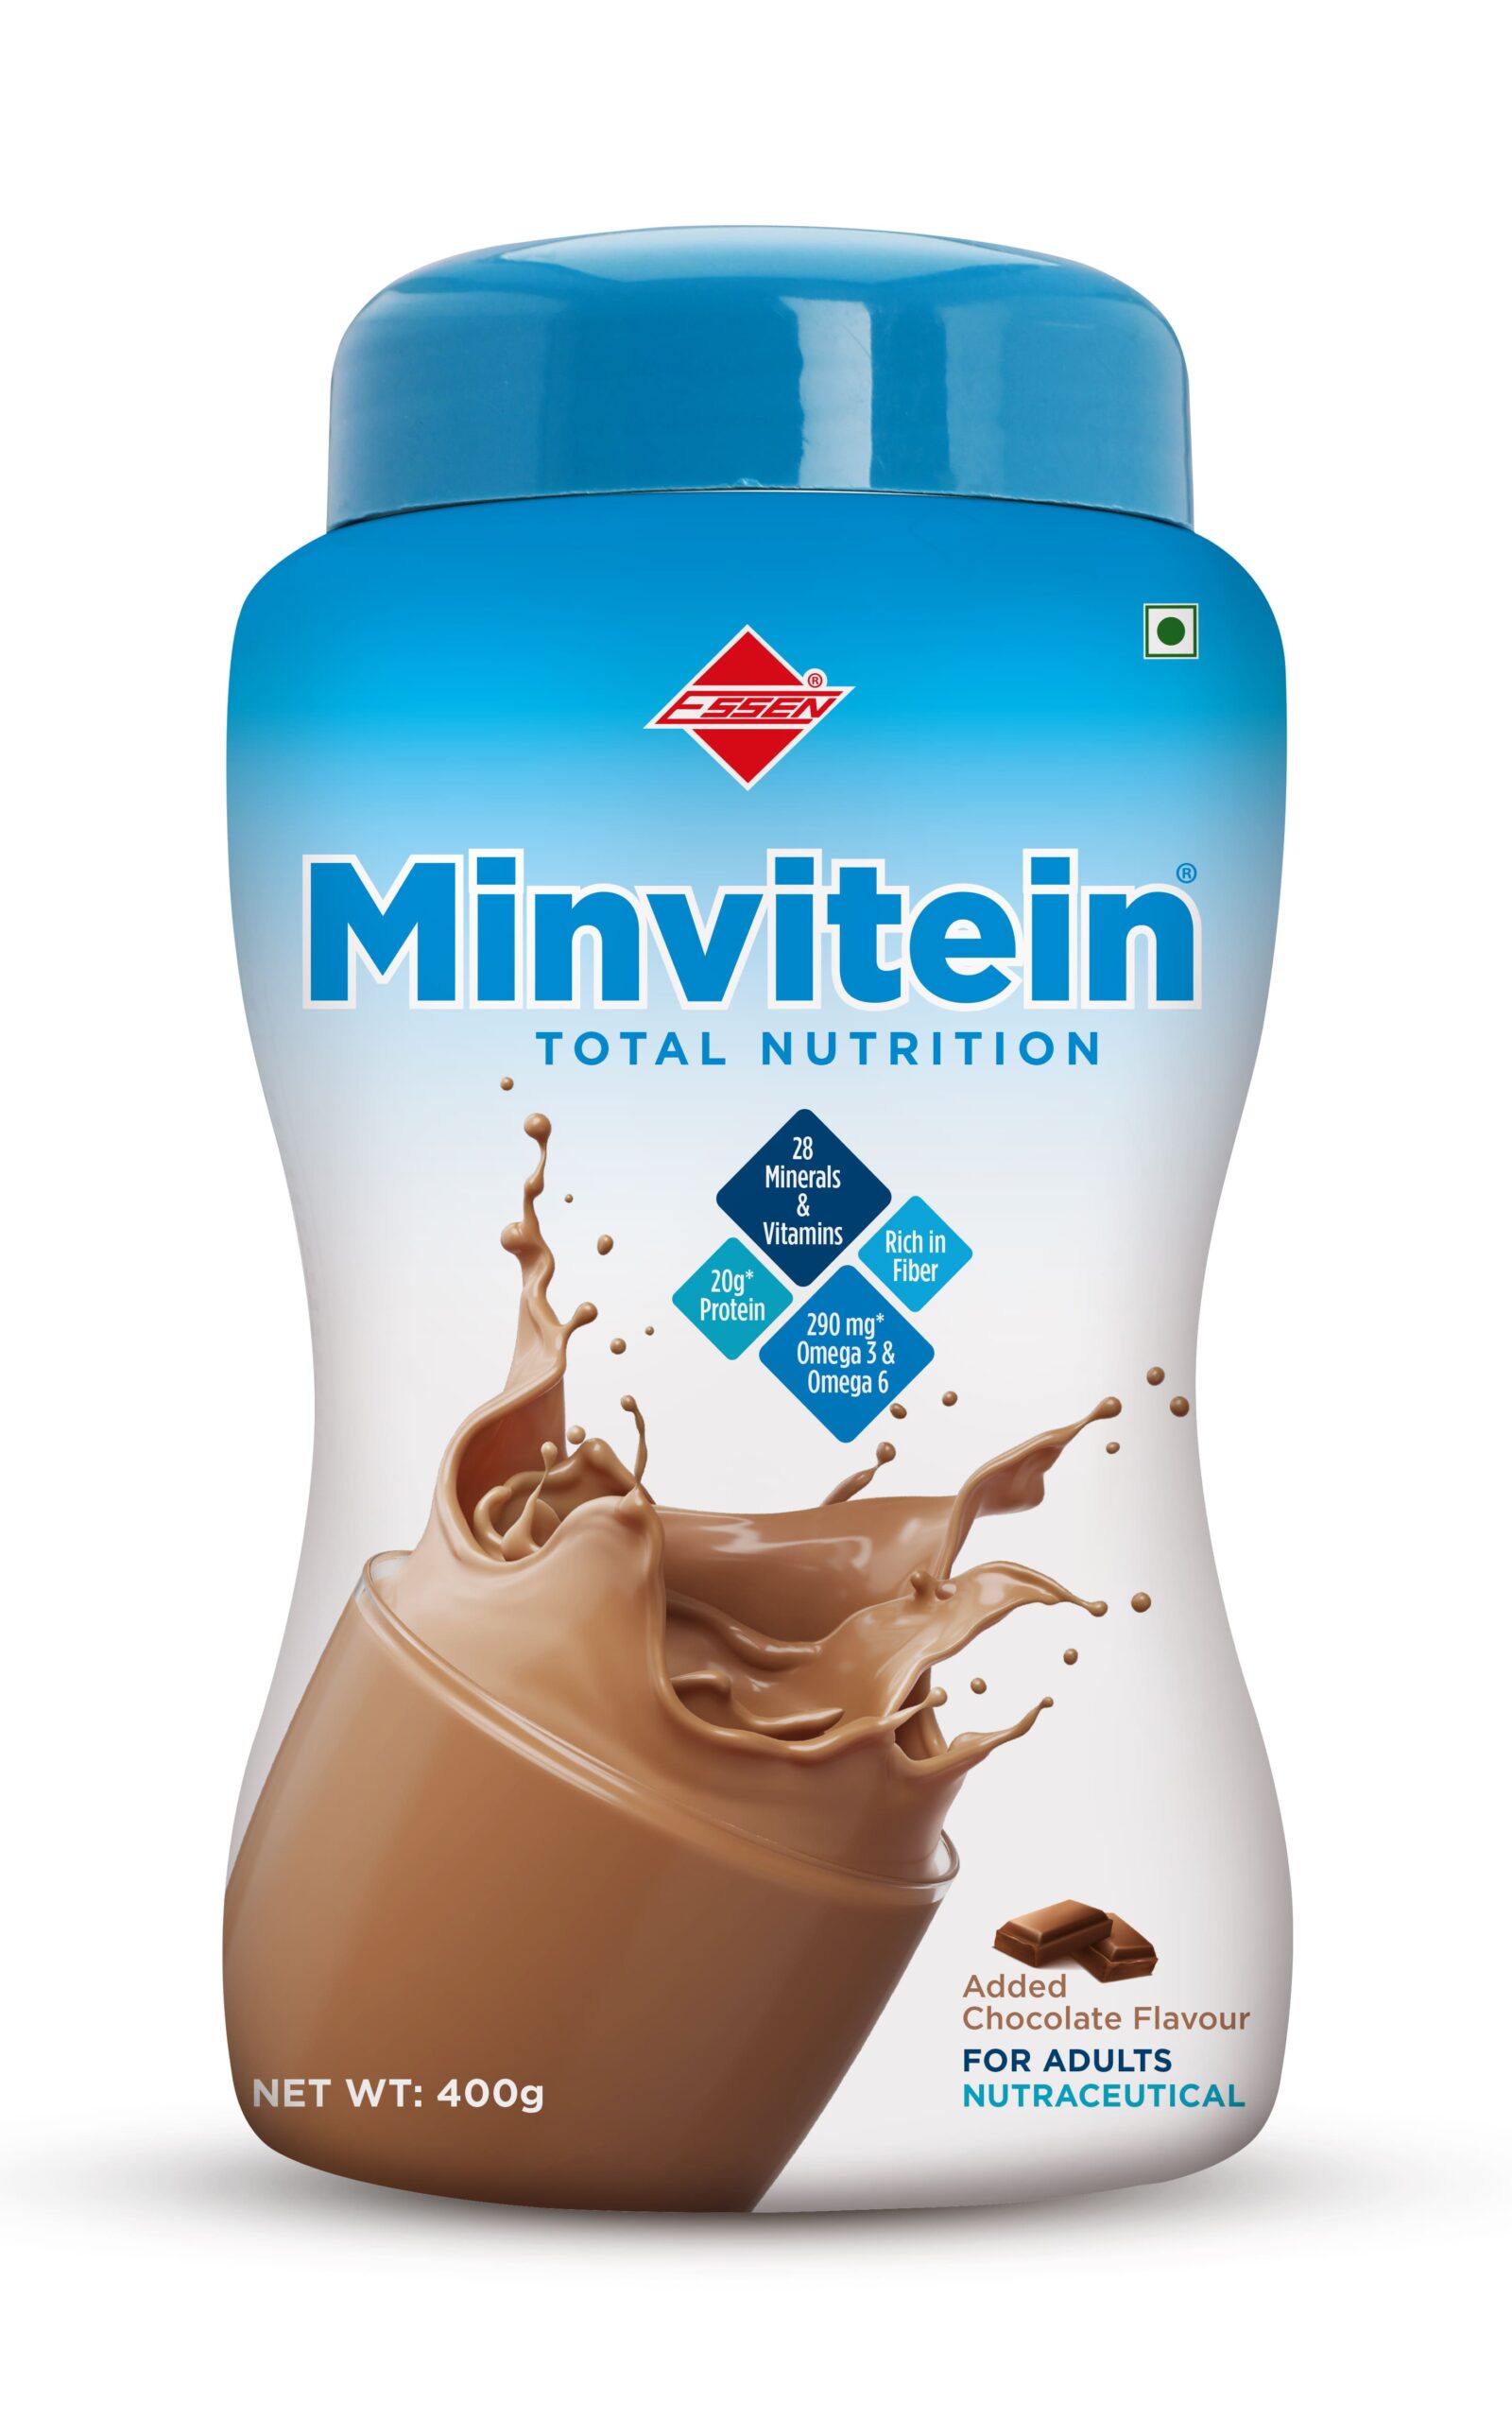 MINVITEIN Nutrition Powder - CHOCOLATE